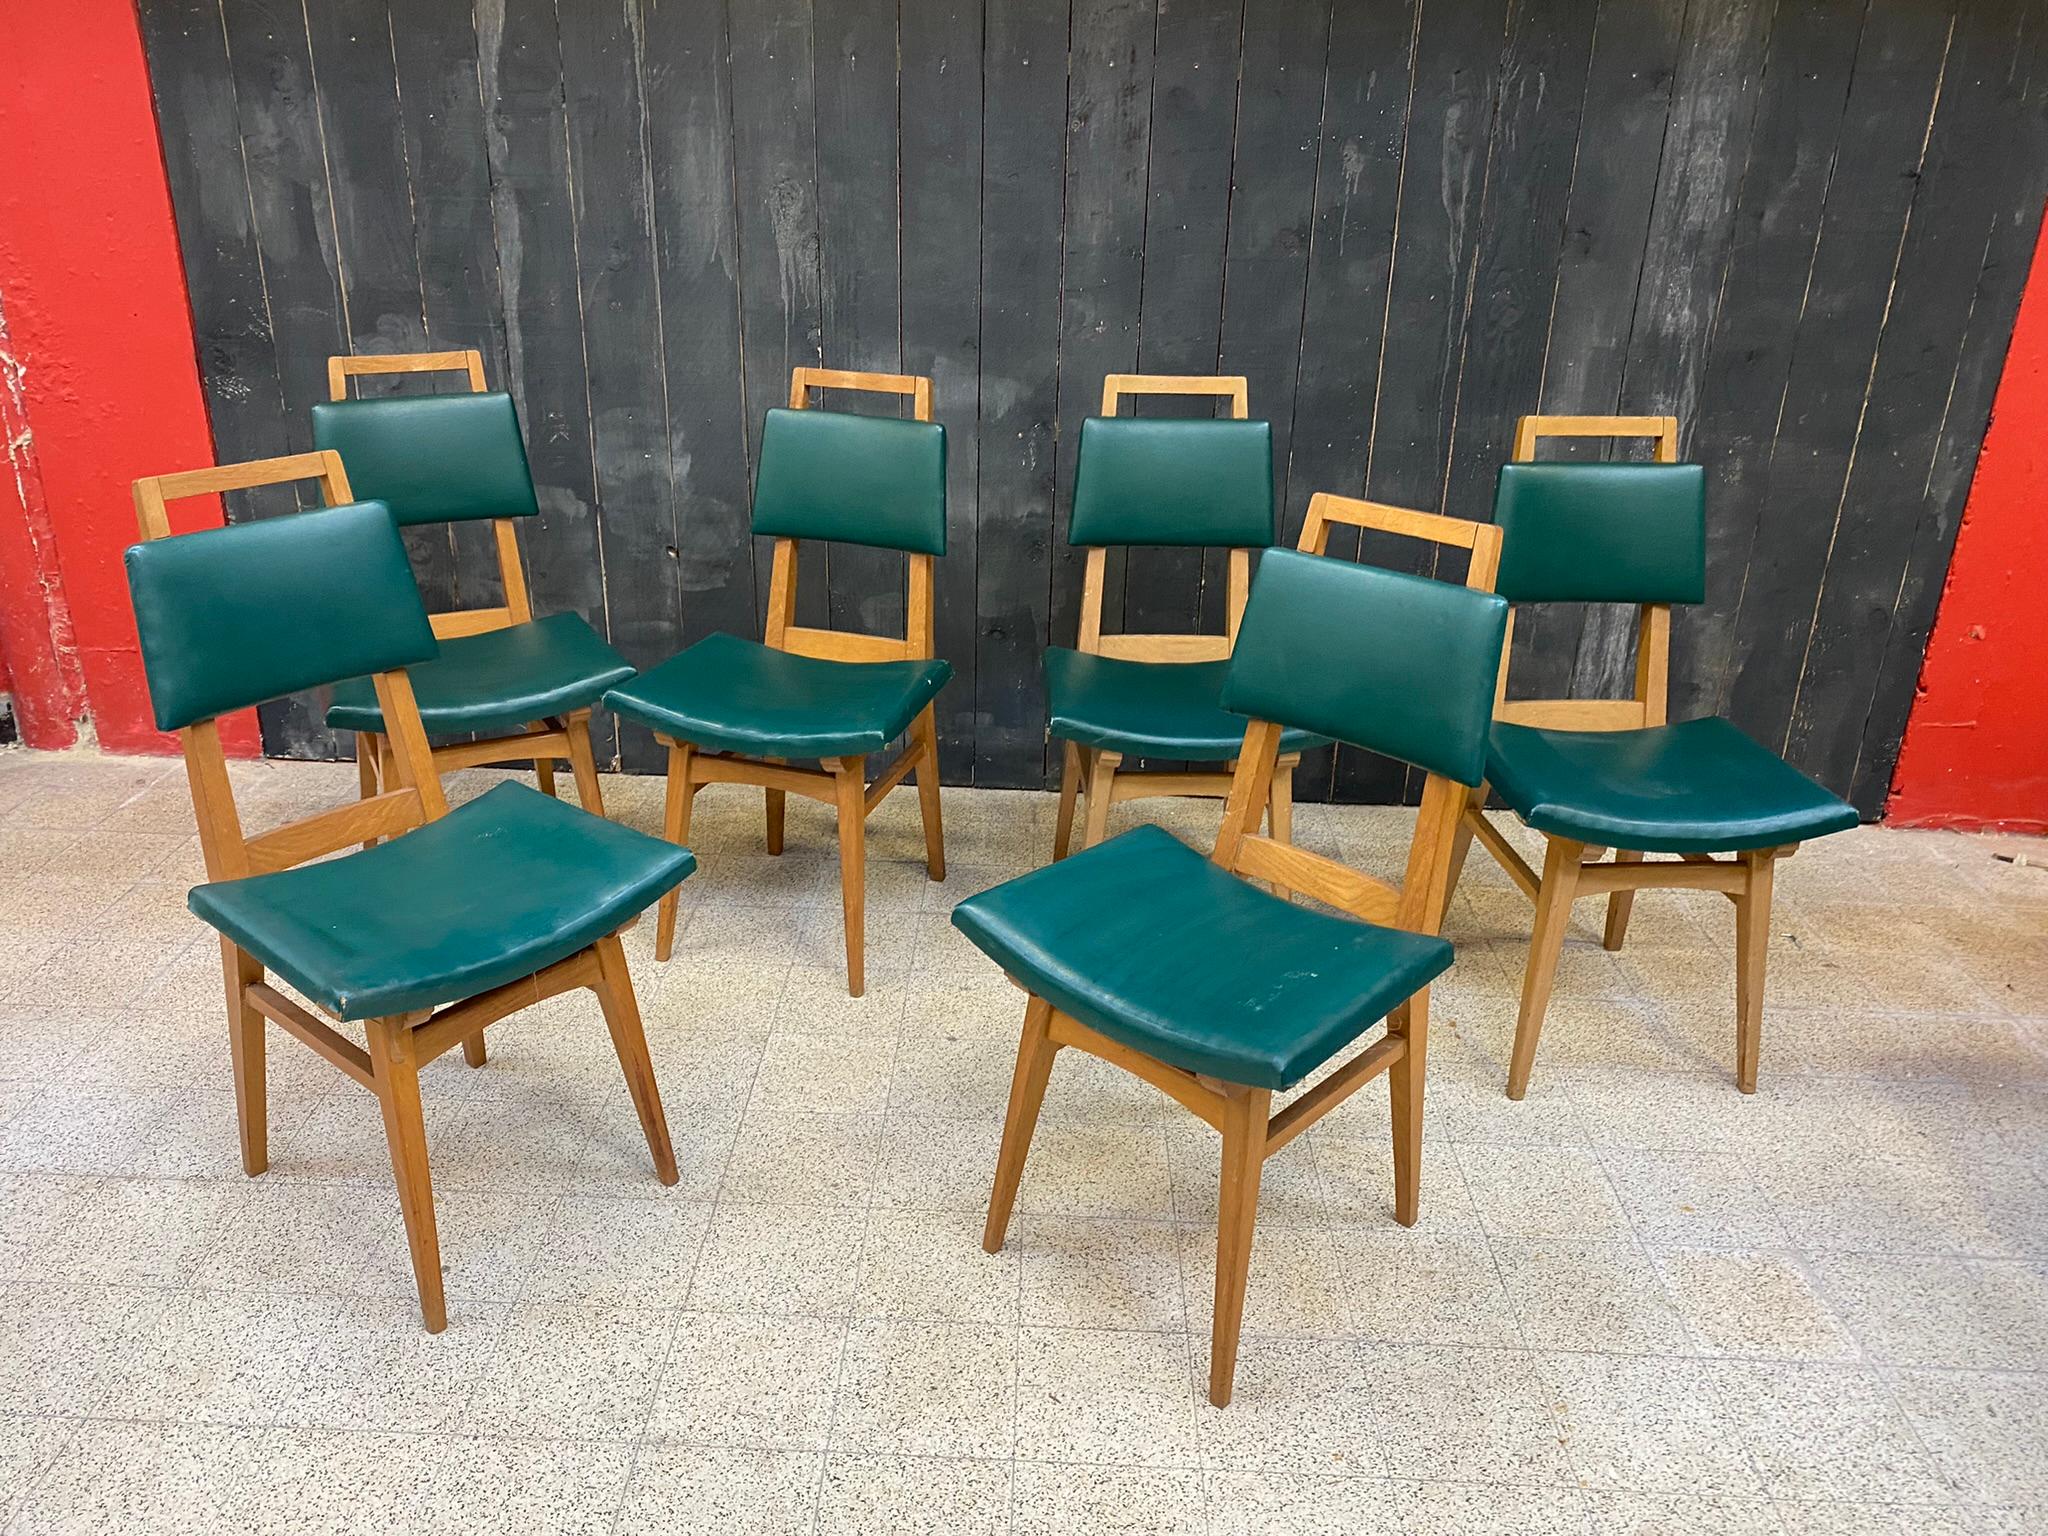 Suite de 6 chaises en chêne, France circa 1950/1960
Style 